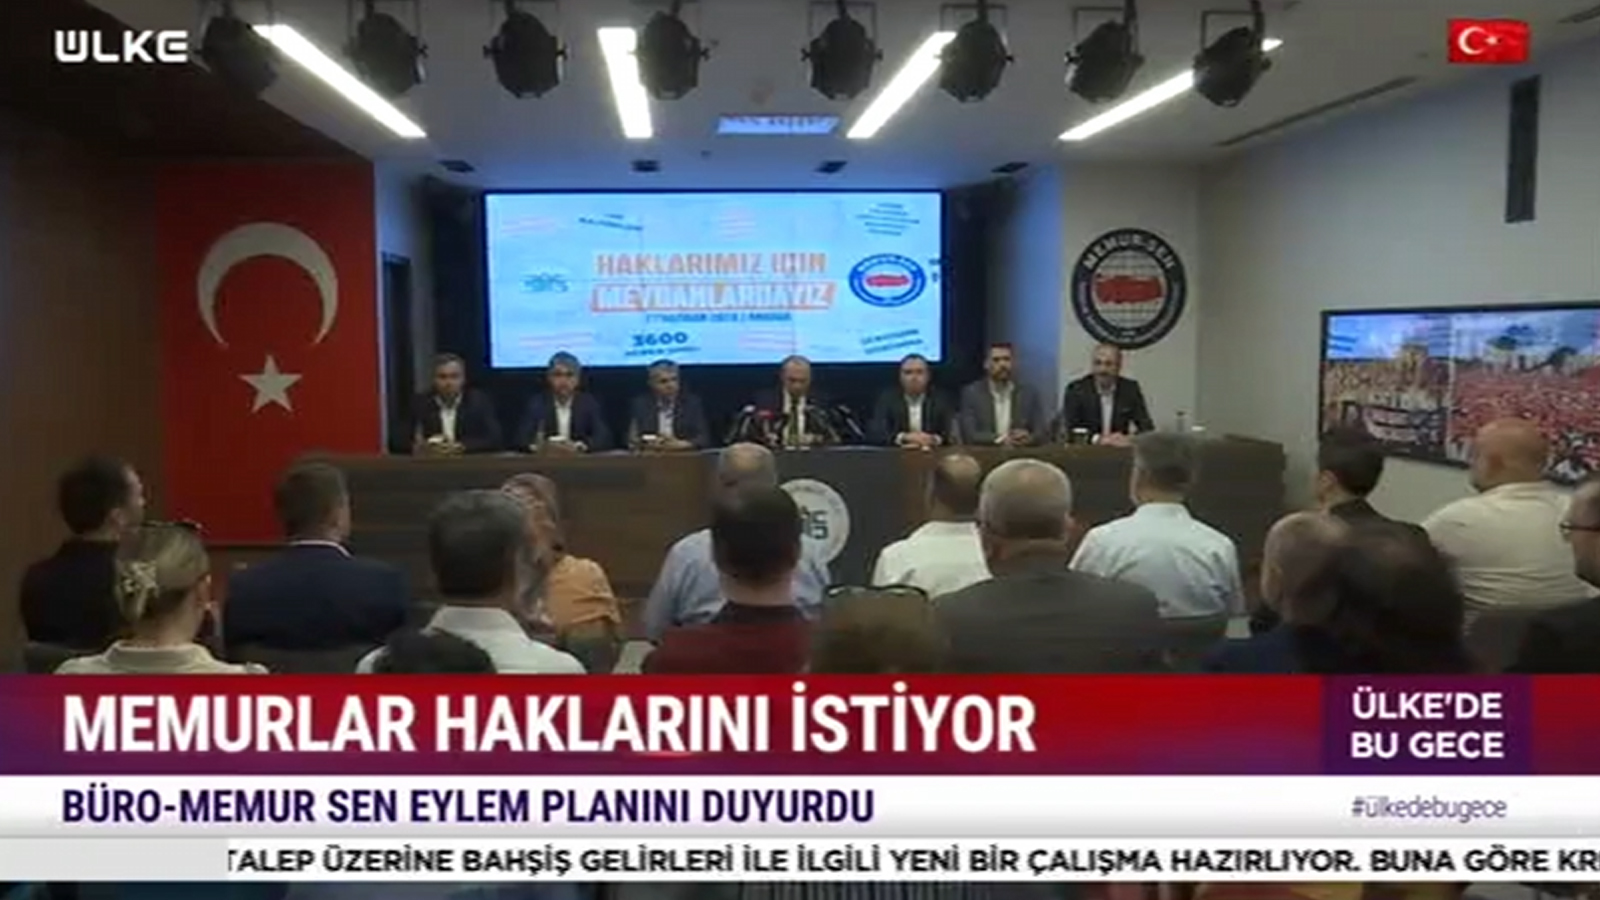 Genel Başkanımız Yusuf Yazgan, Düzenlenen Basın Toplantısıyla Eylem Planımız Açıkladı (Ülketv Haberi)